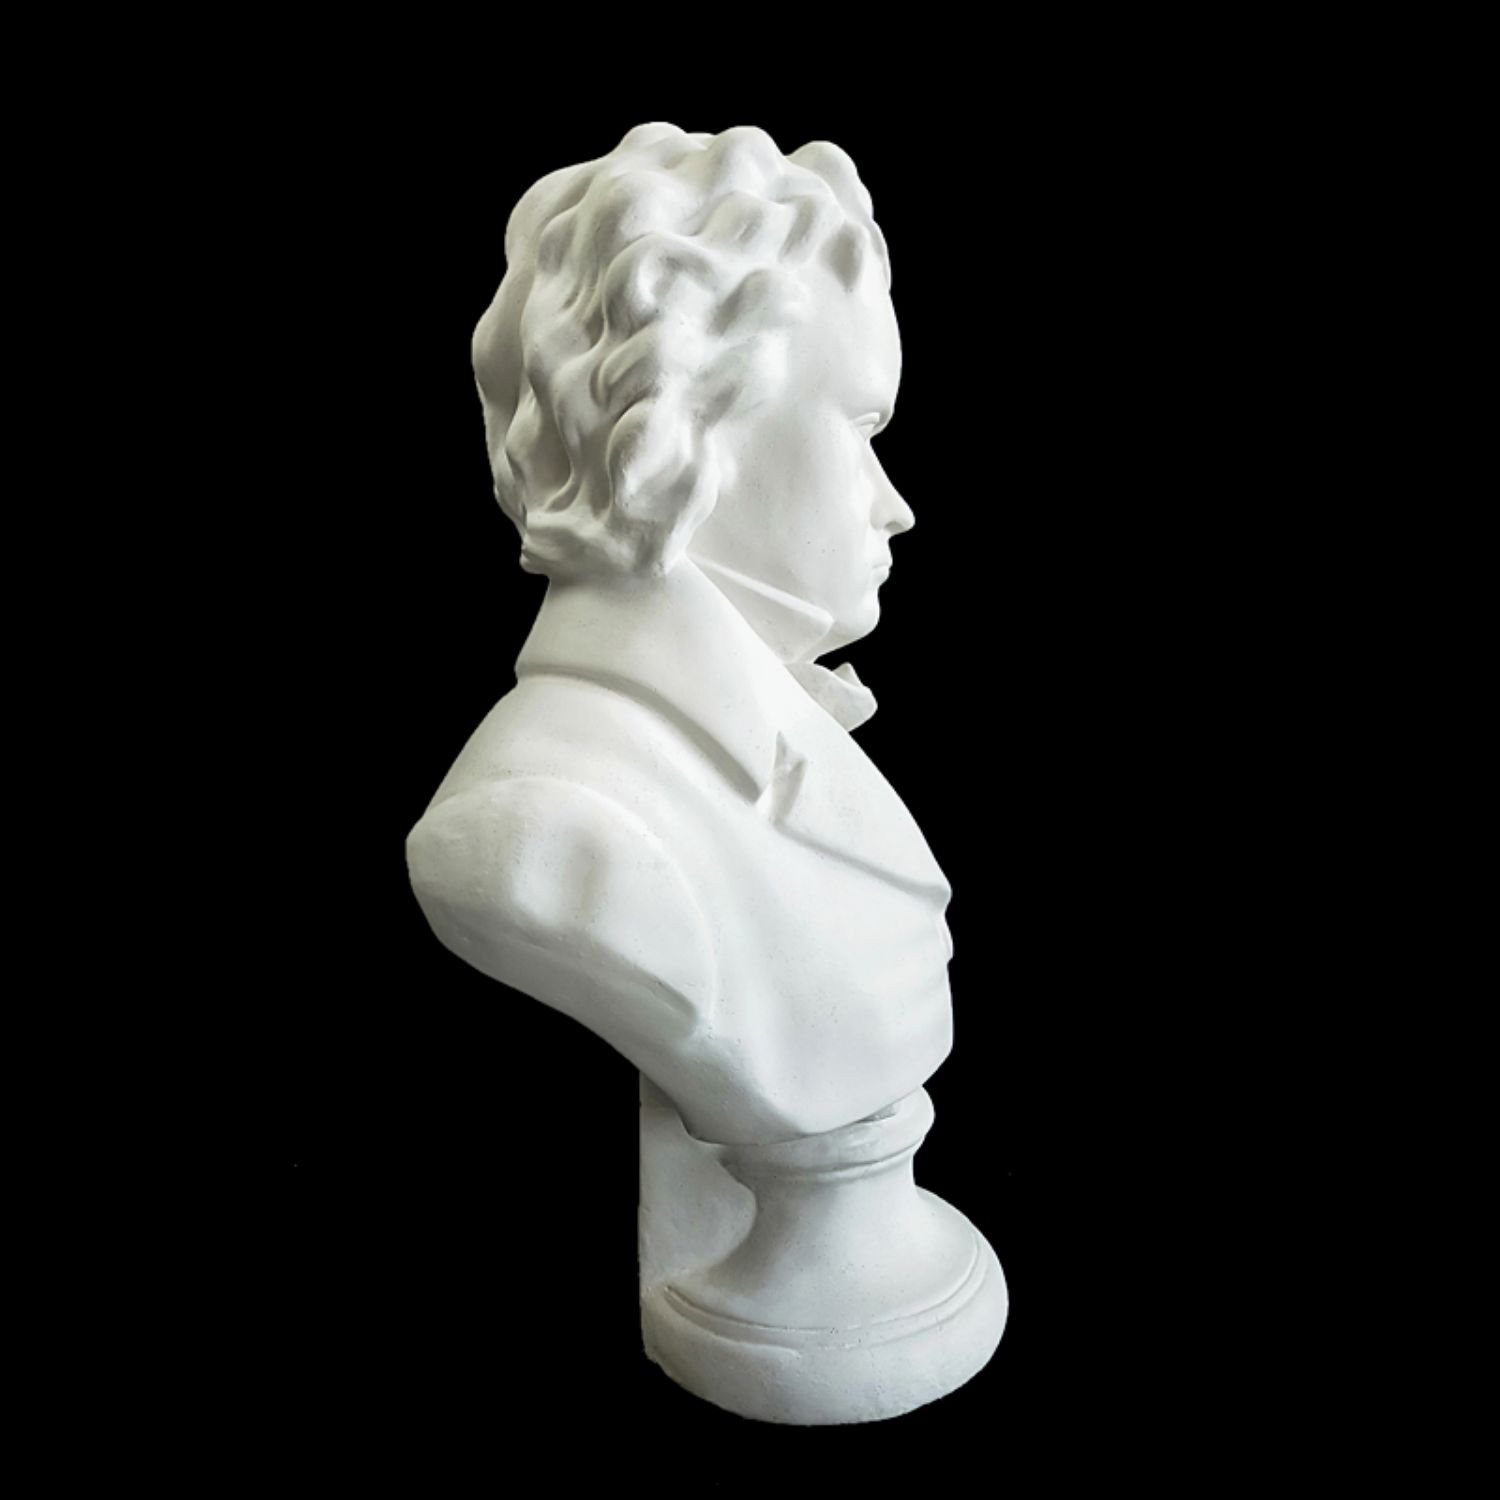 雕像雕塑装饰摆件画室素描石膏头像模型美术教具摄影道具唐帆 贝多芬